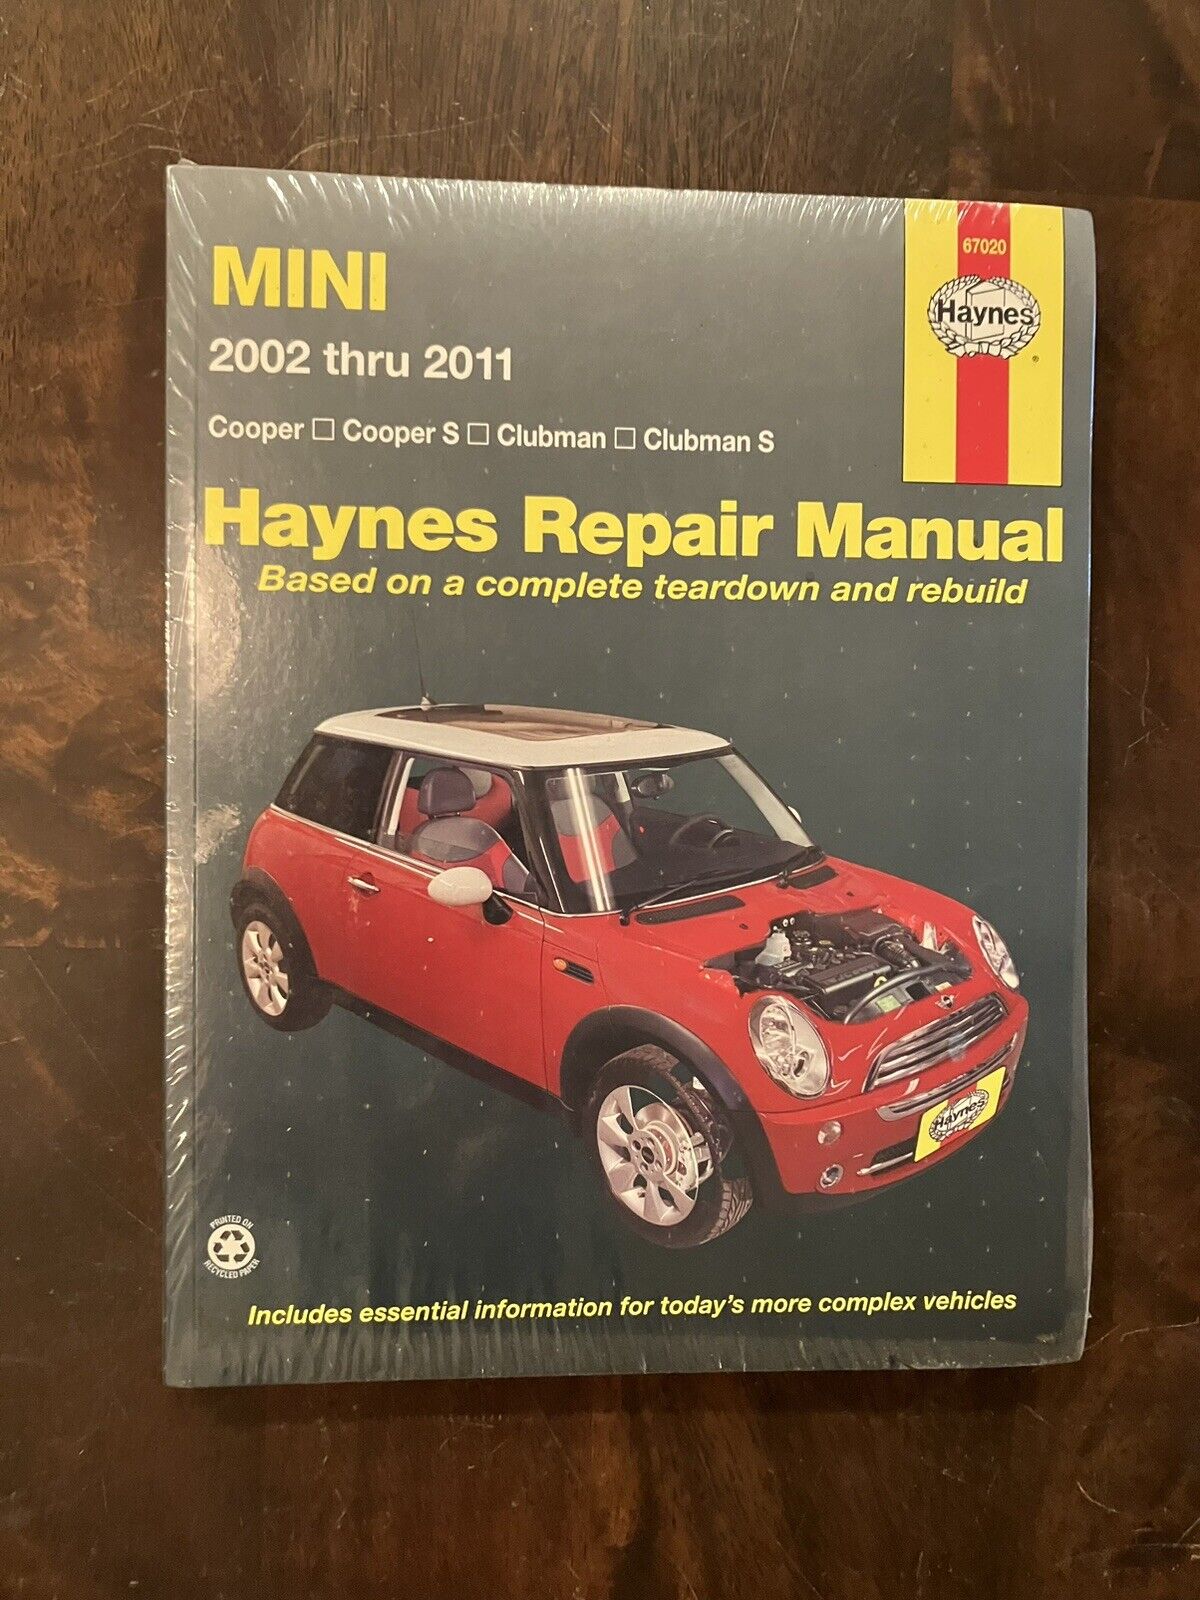 Haynes Repair Manual 2002-2011 Mini Cooper & Clubman #67020